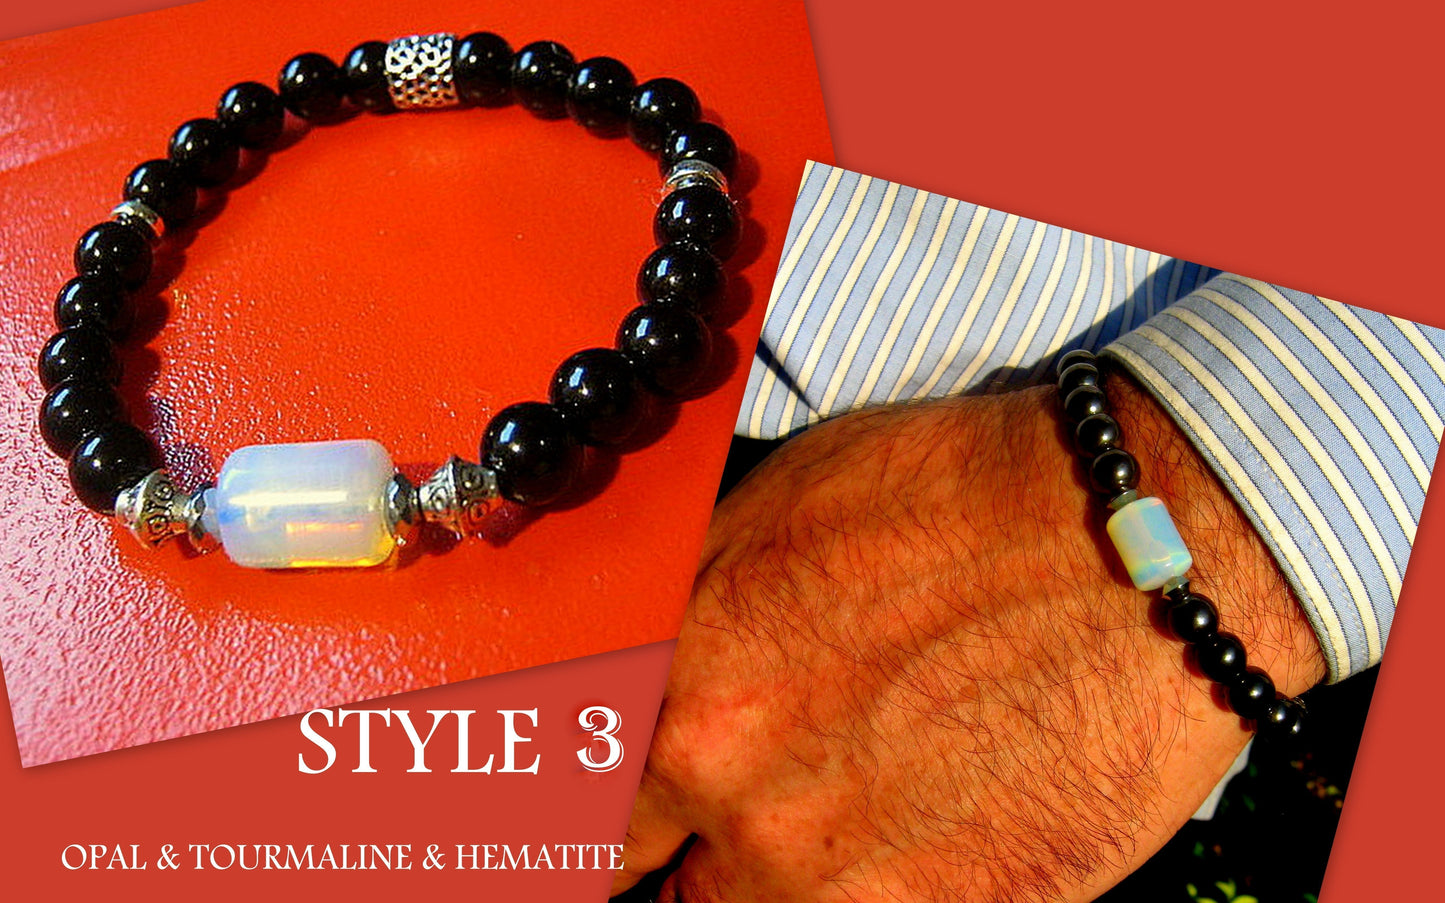 CAMELYS MAGIC 4 MEN - Men stone OPAL Bracelet red TIGER EYE Onyx Tourmaline Hematite Moonstone, Handmade bracelet men gift